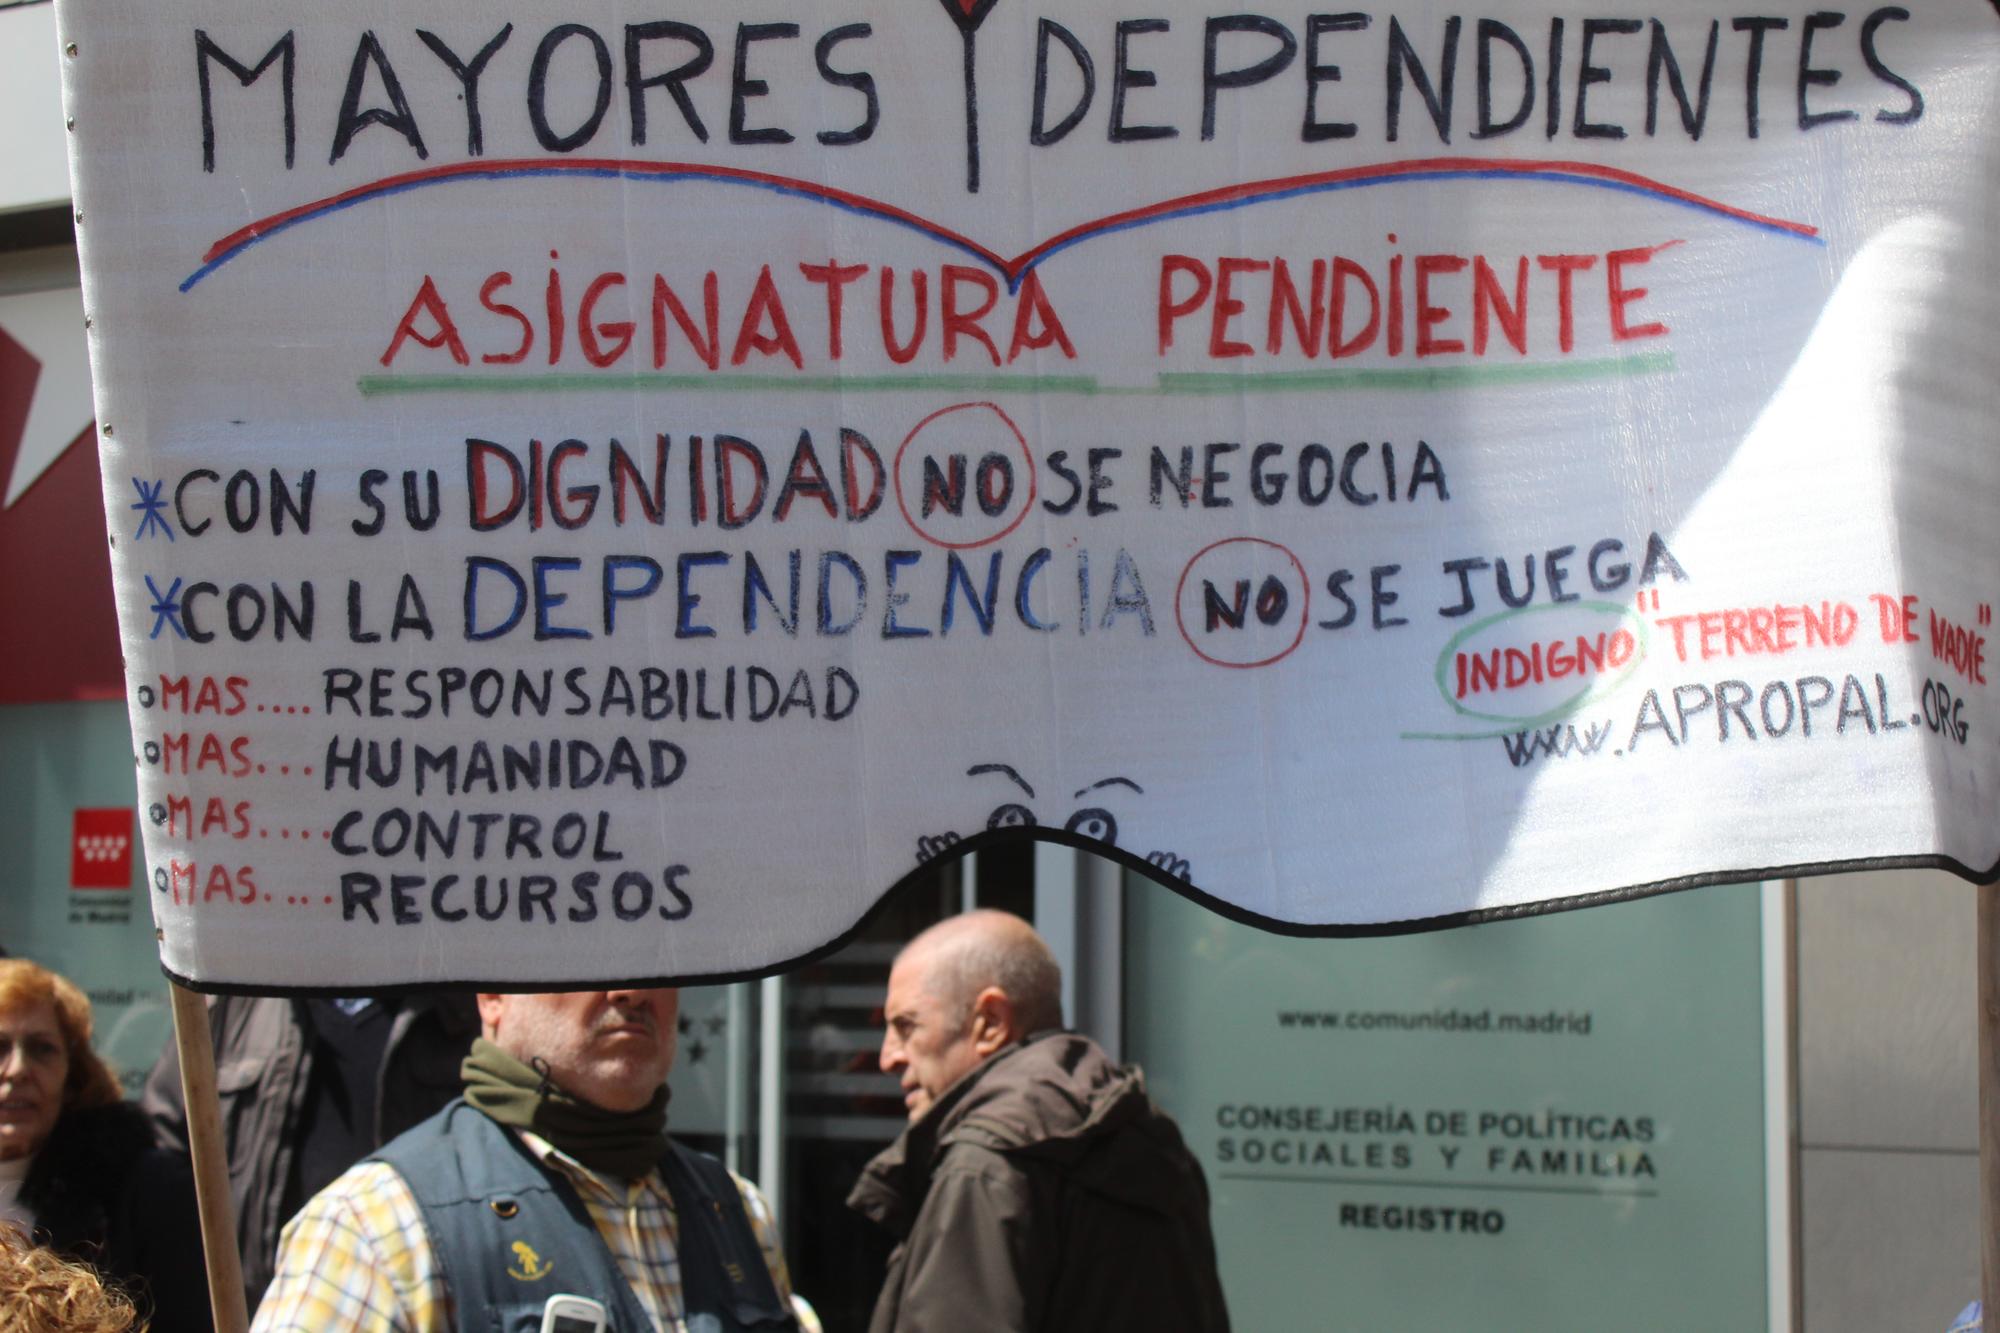 Protestas Residencia Mayores Maltrato Comunidad de Madrid 25/04/19